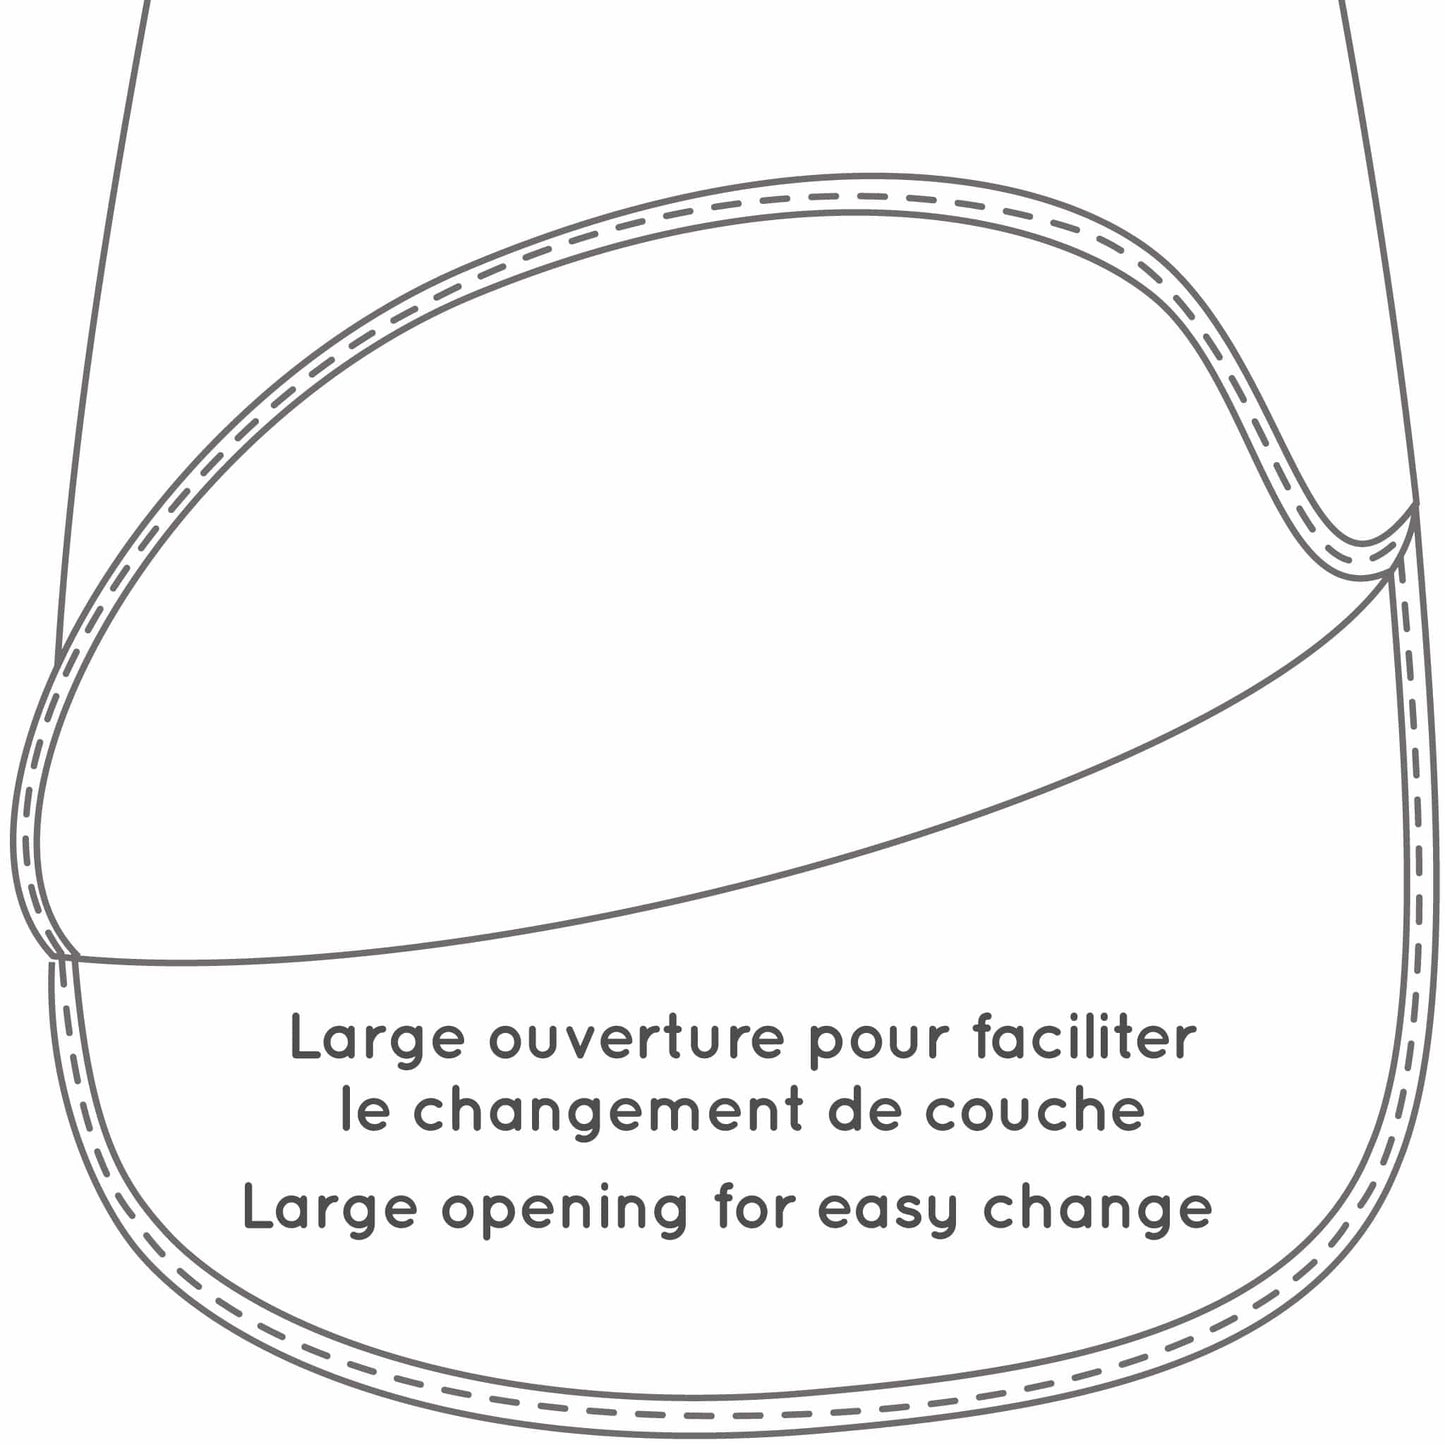 Velour sleep bag - Taupe (2.5 Togs)